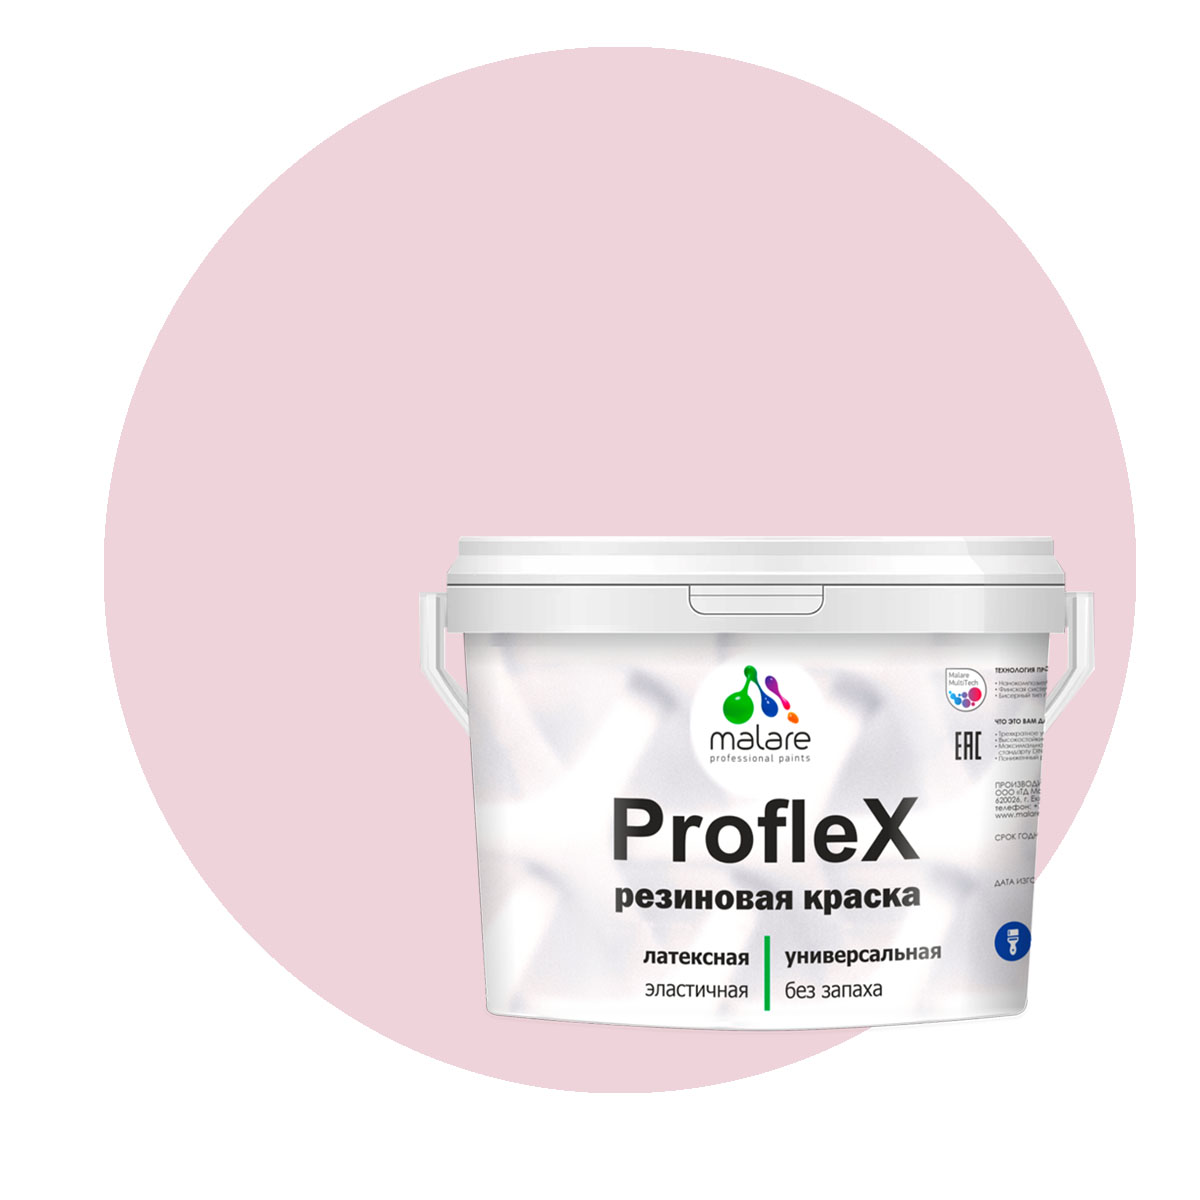 Краска Malare ProfleX для фасадов, интерьера, мебели, бледно-розовый, 1 кг.